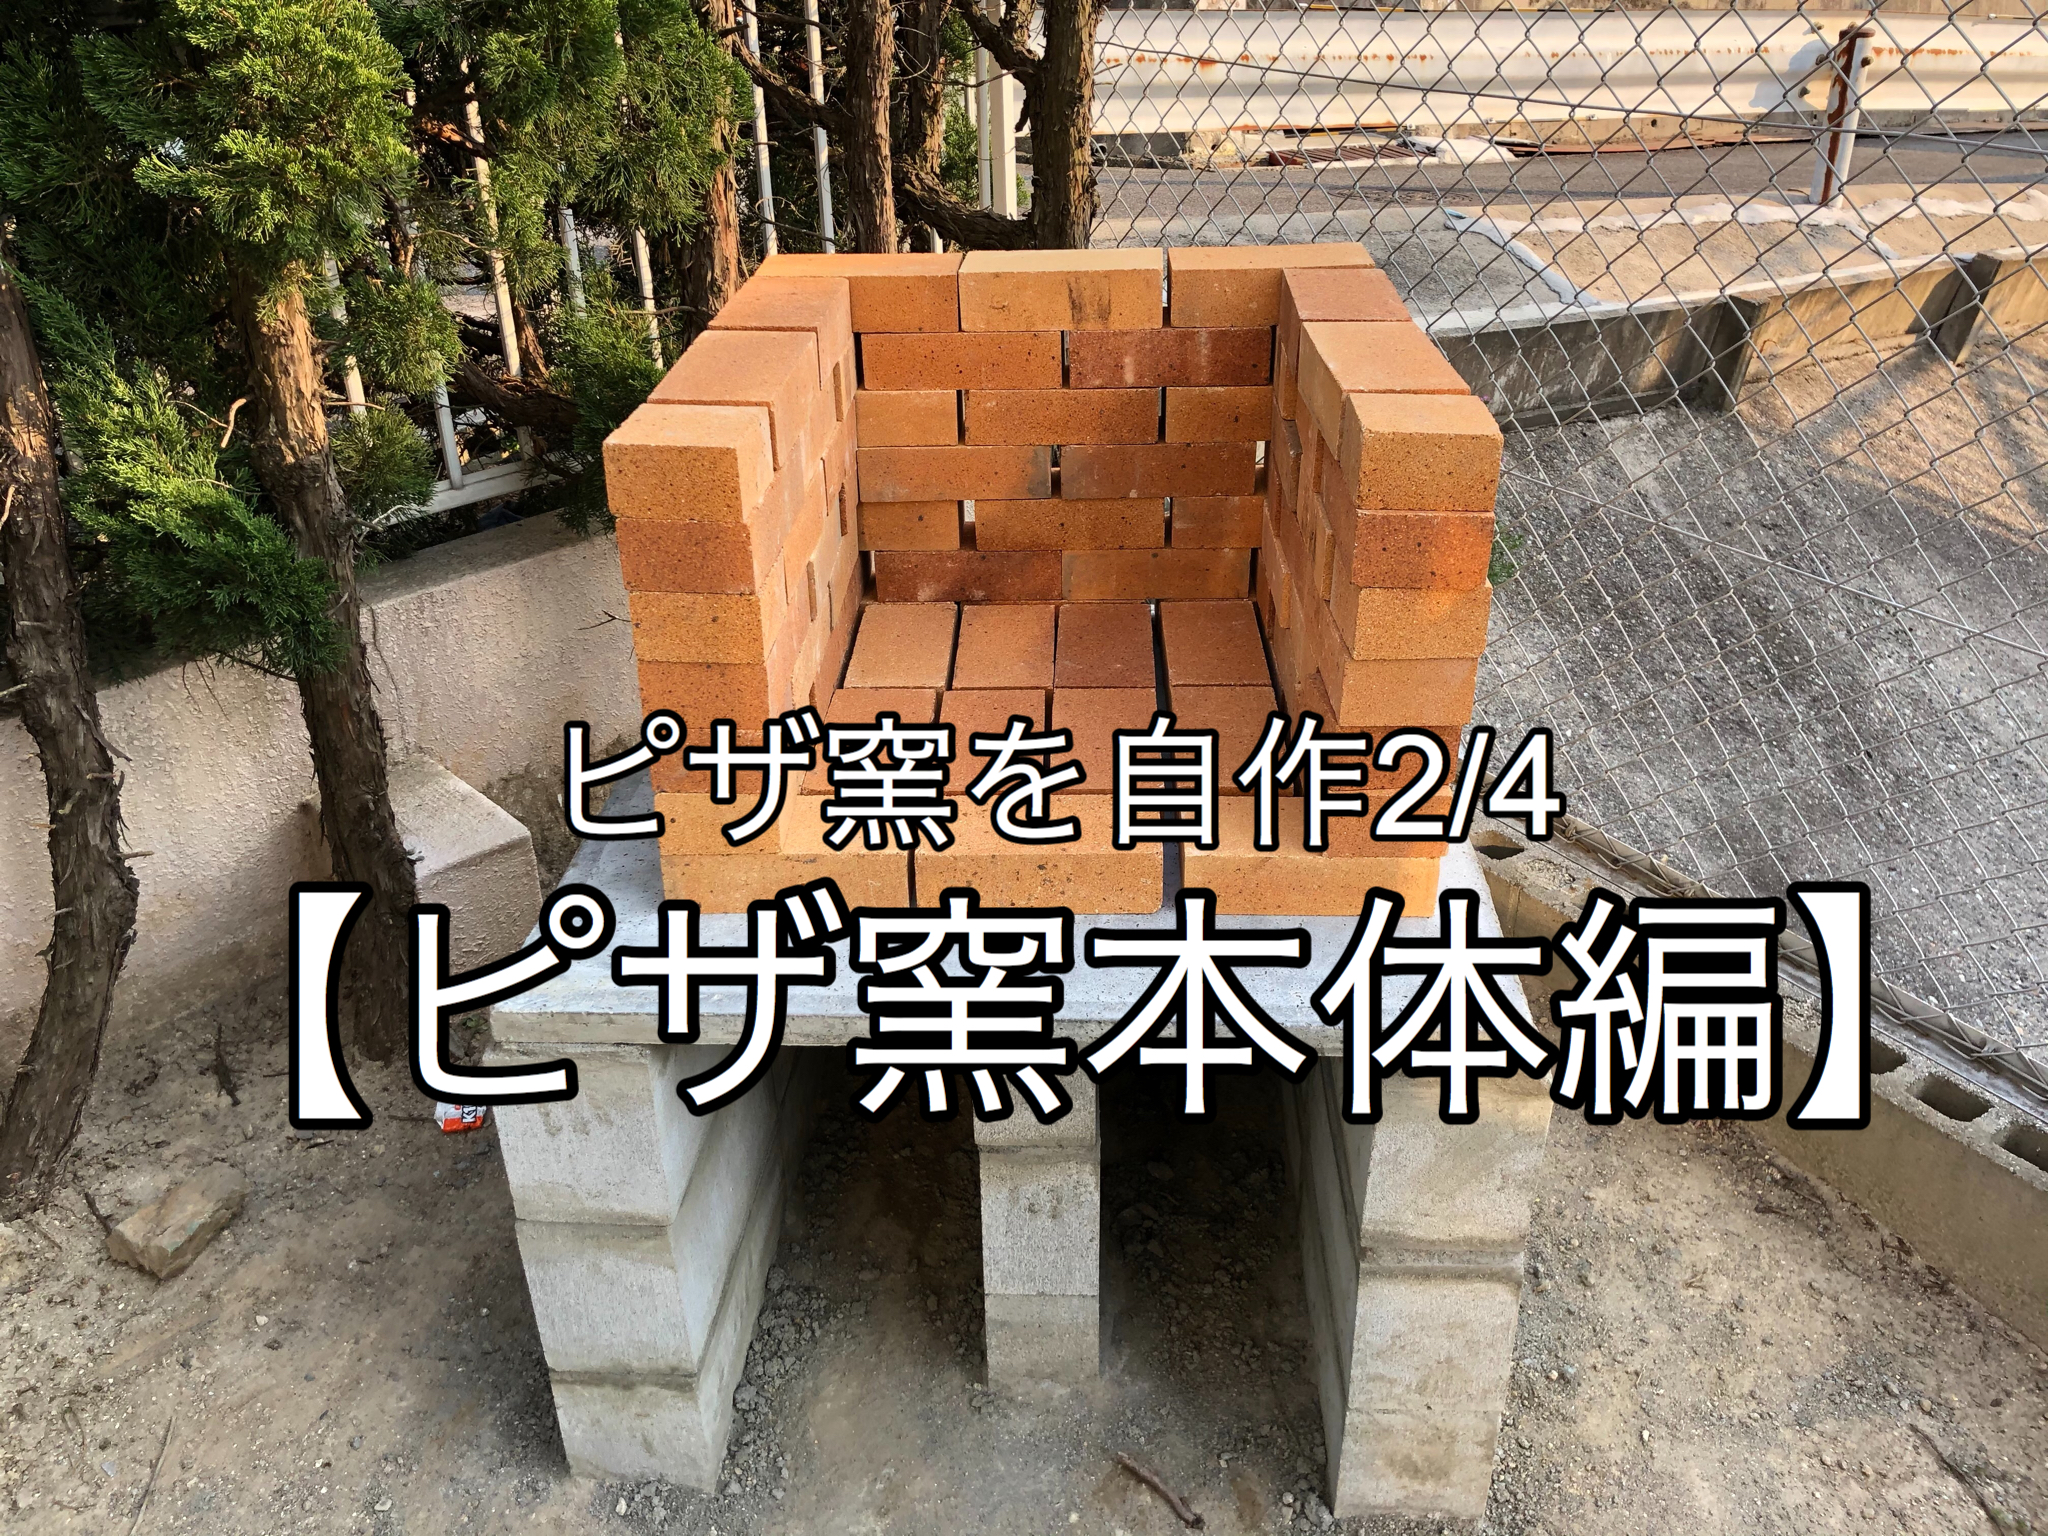 ピザ窯の耐火レンガの積み方】焼床もアサヒキャスターで自作。 | yudaikawase.com